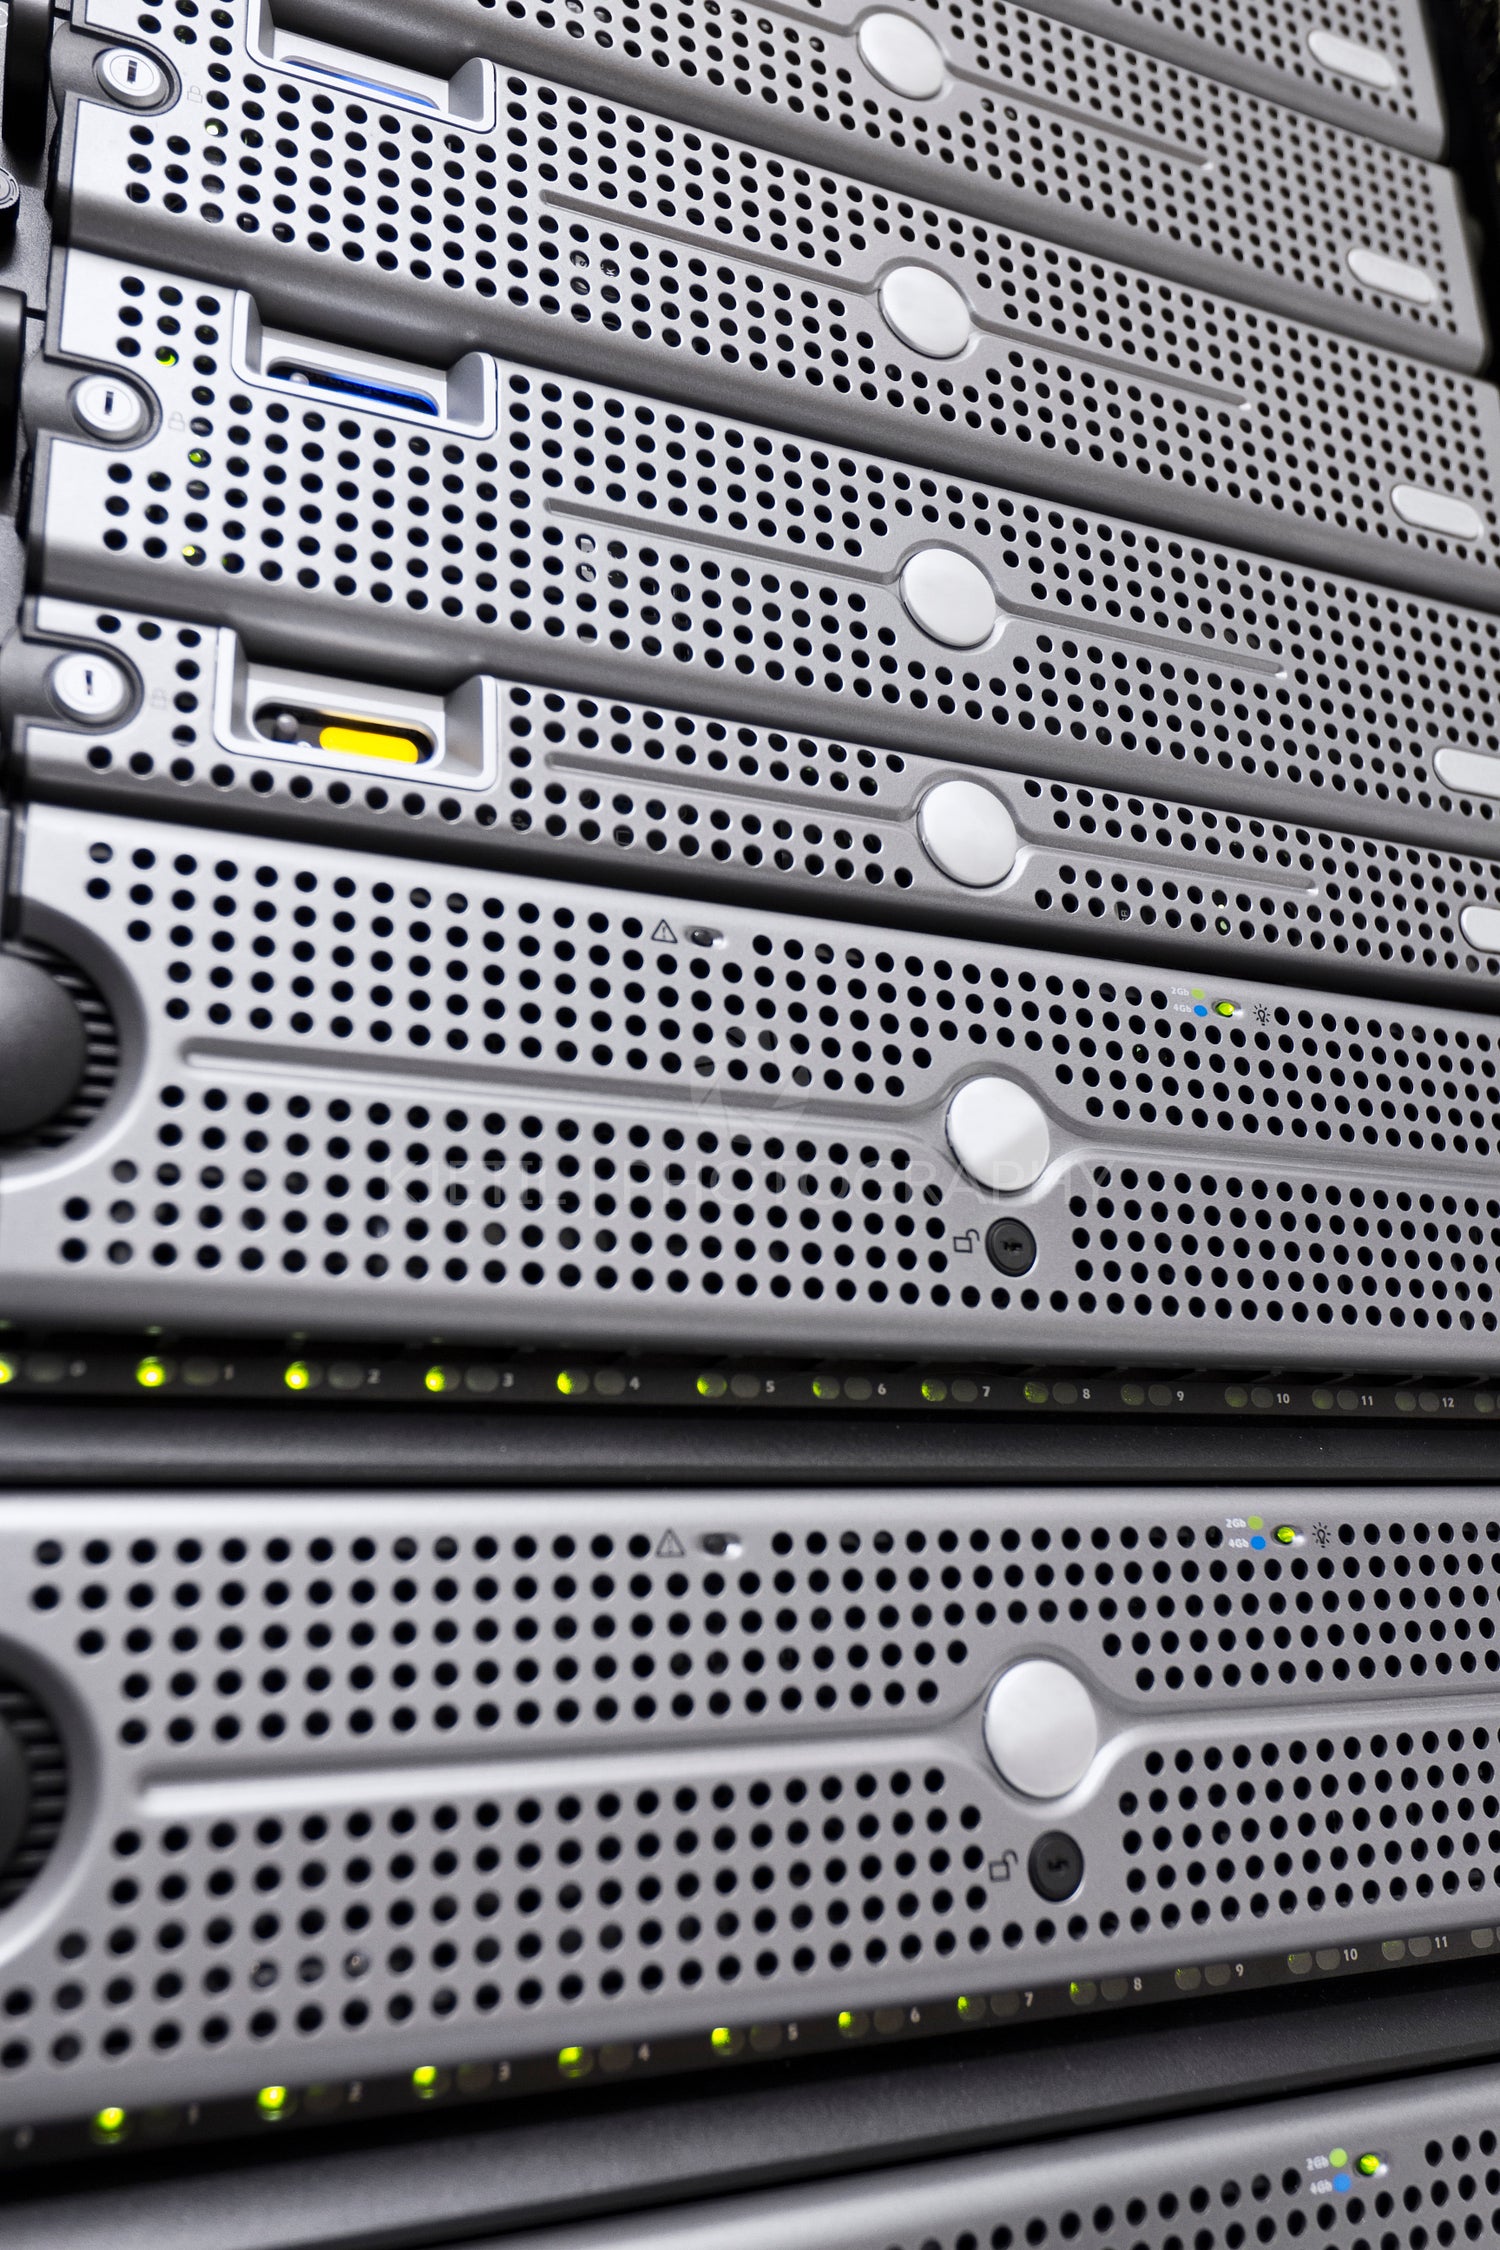 Rack Servers in Datacenter